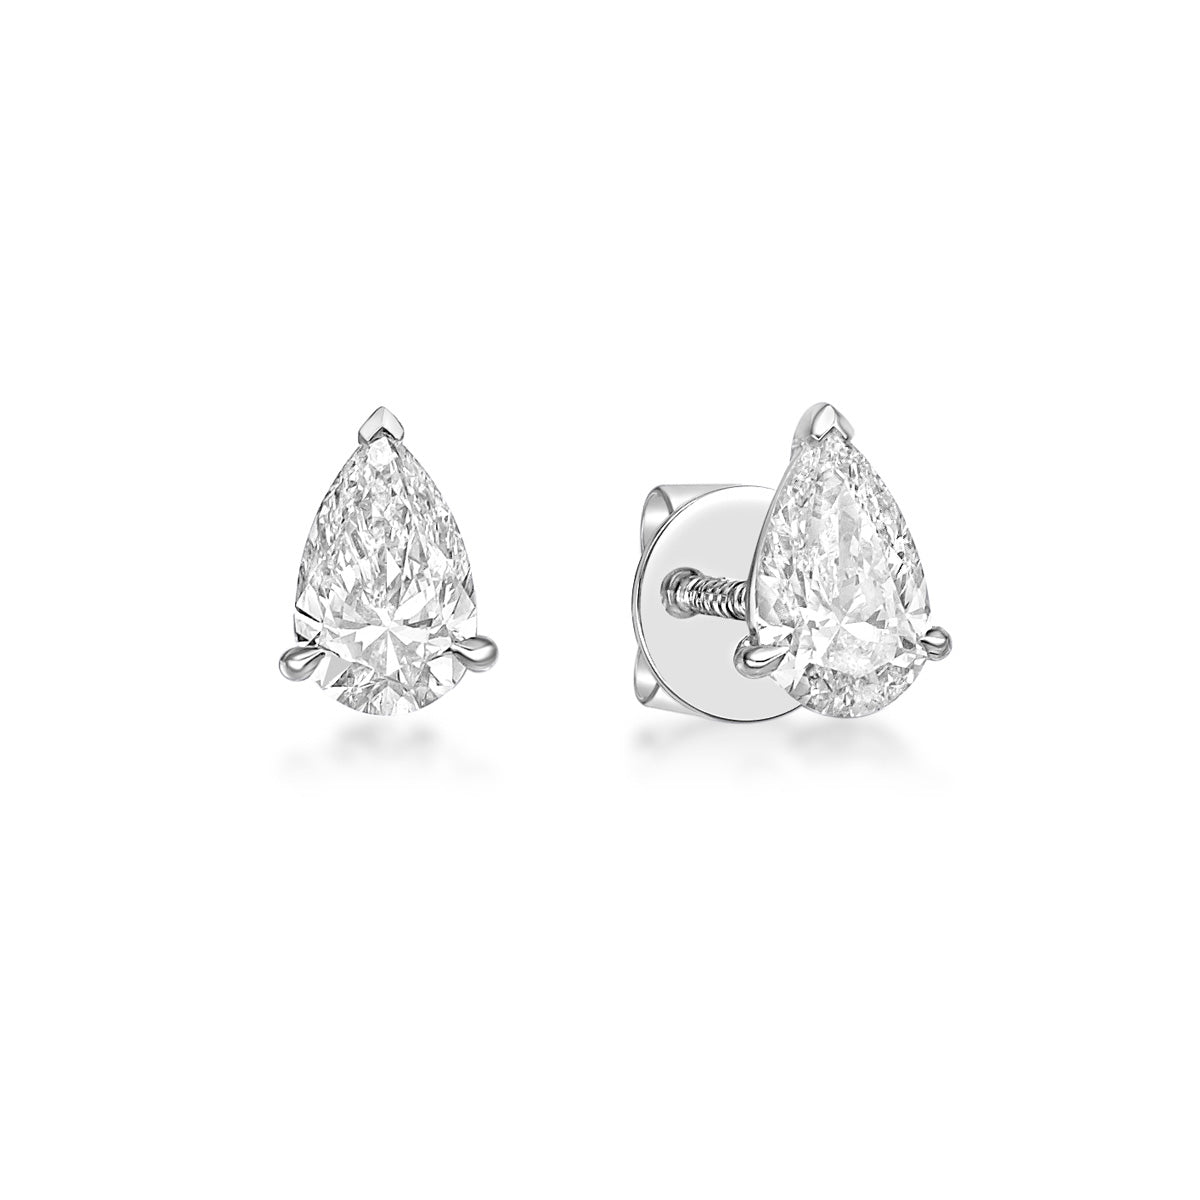 70pt Pear Diamond Stud earrings in 18K White Gold